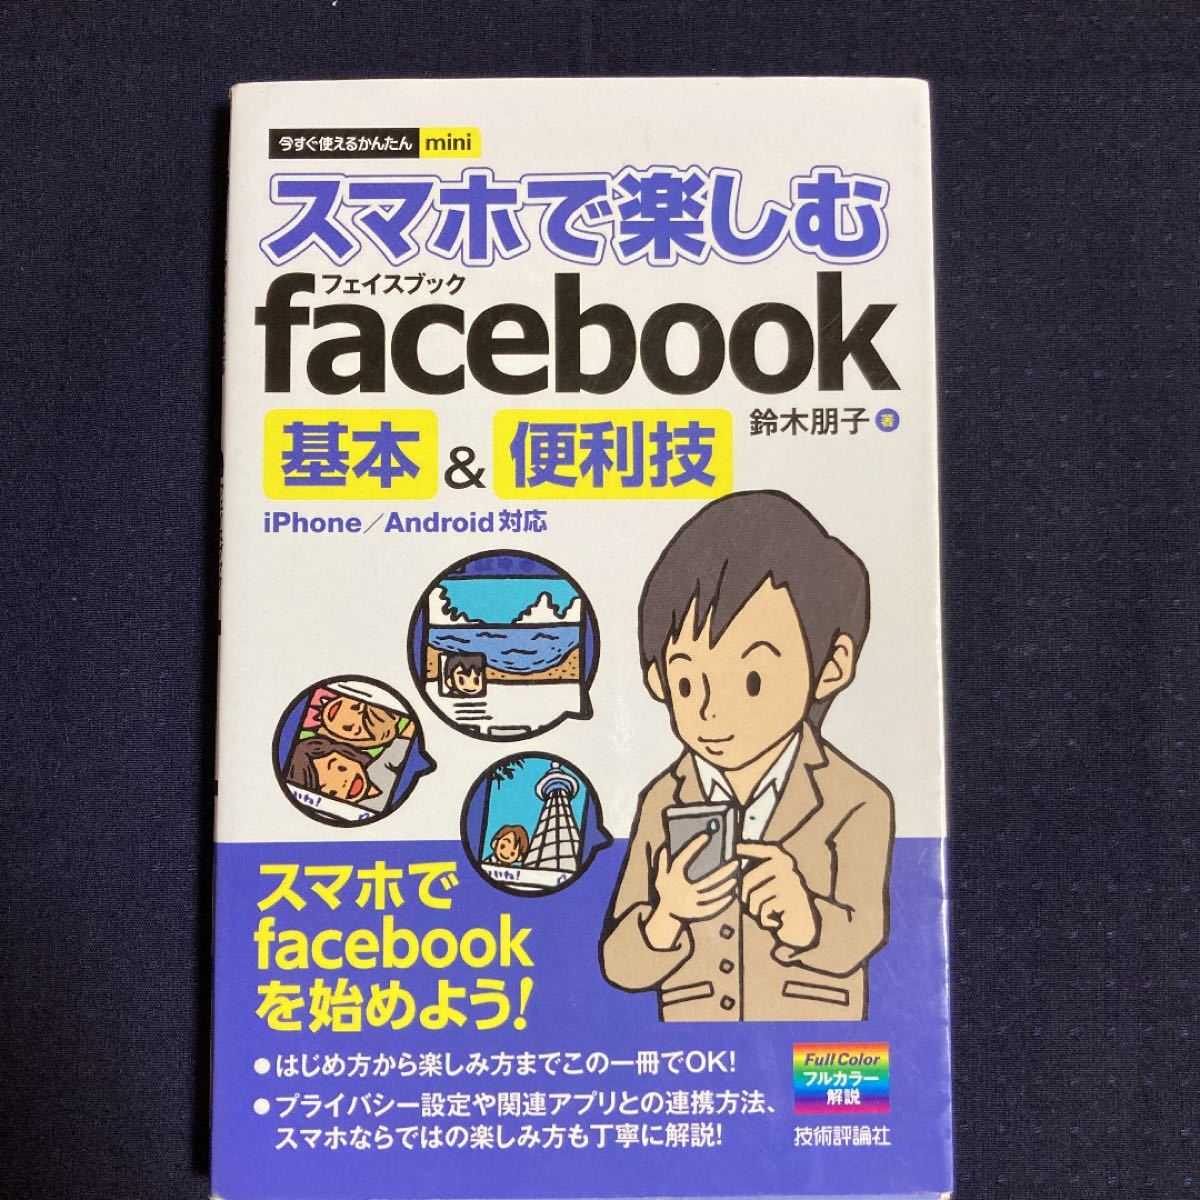 「スマホで楽しむfacebook基本&便利技」鈴木 朋子